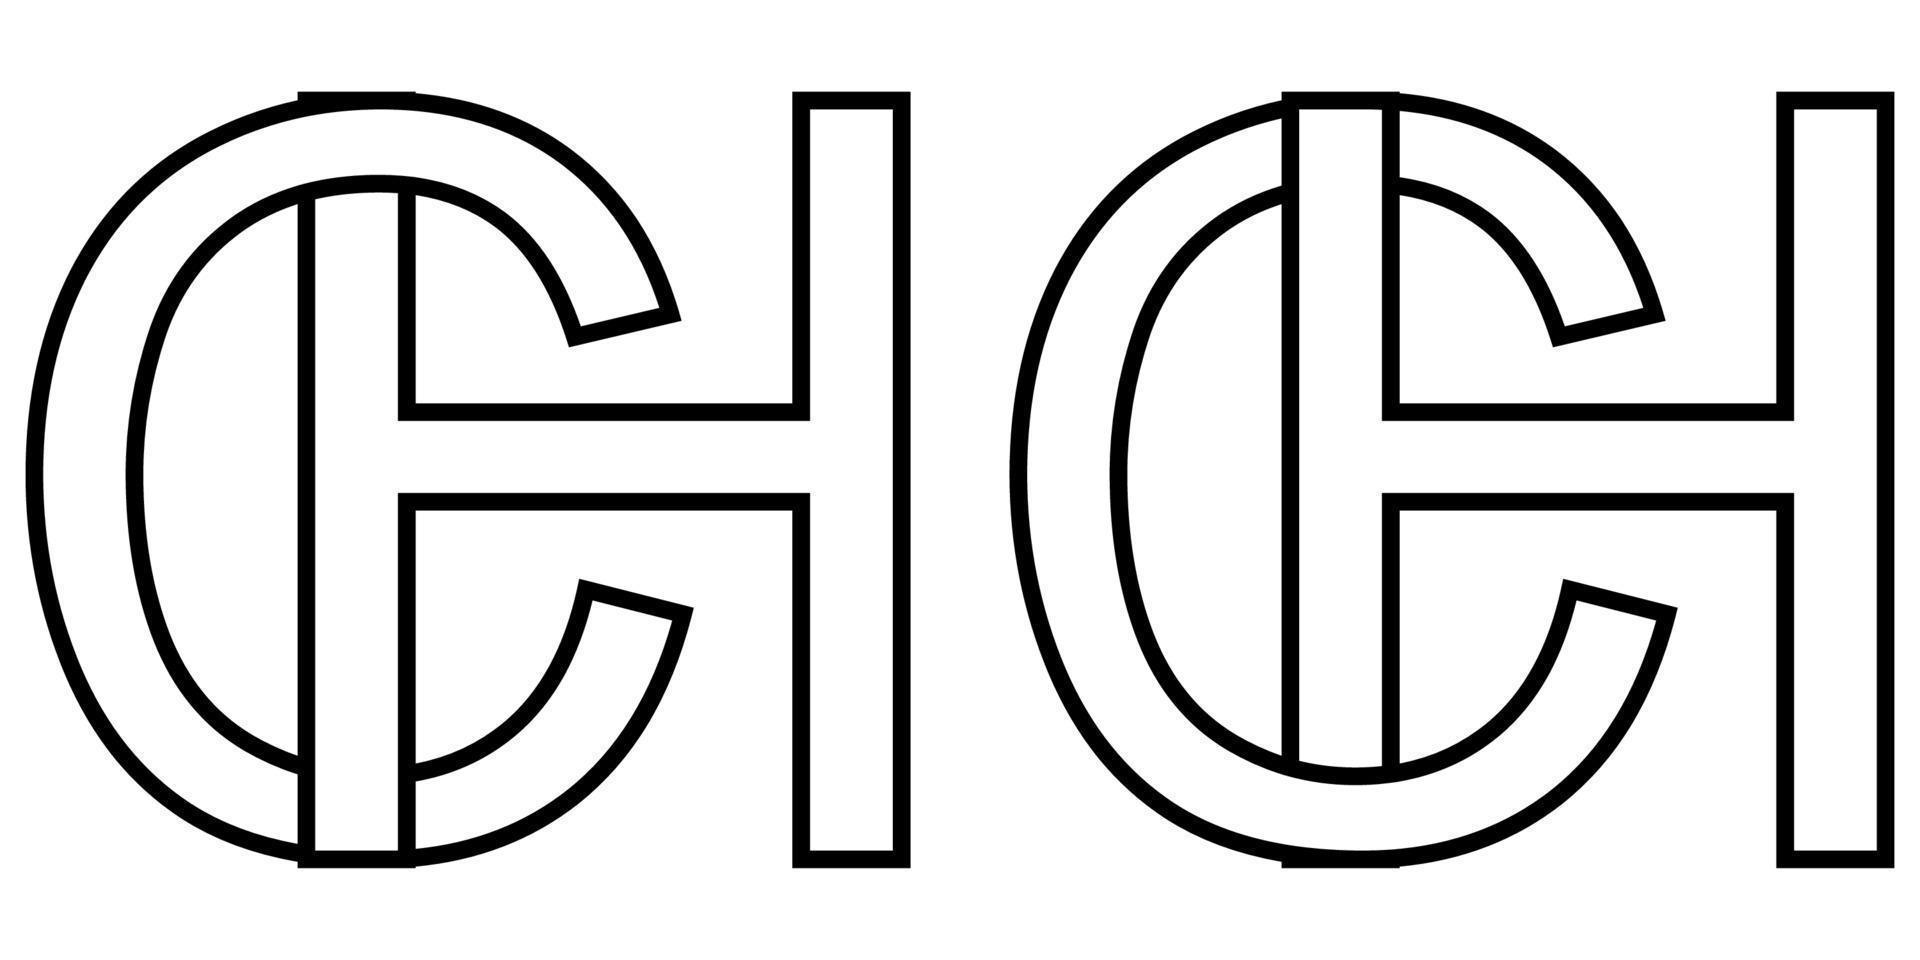 logo cartello hc e cap icona cartello Due interlacciato lettere h, c vettore logo hc, cap primo capitale lettere modello alfabeto h, c